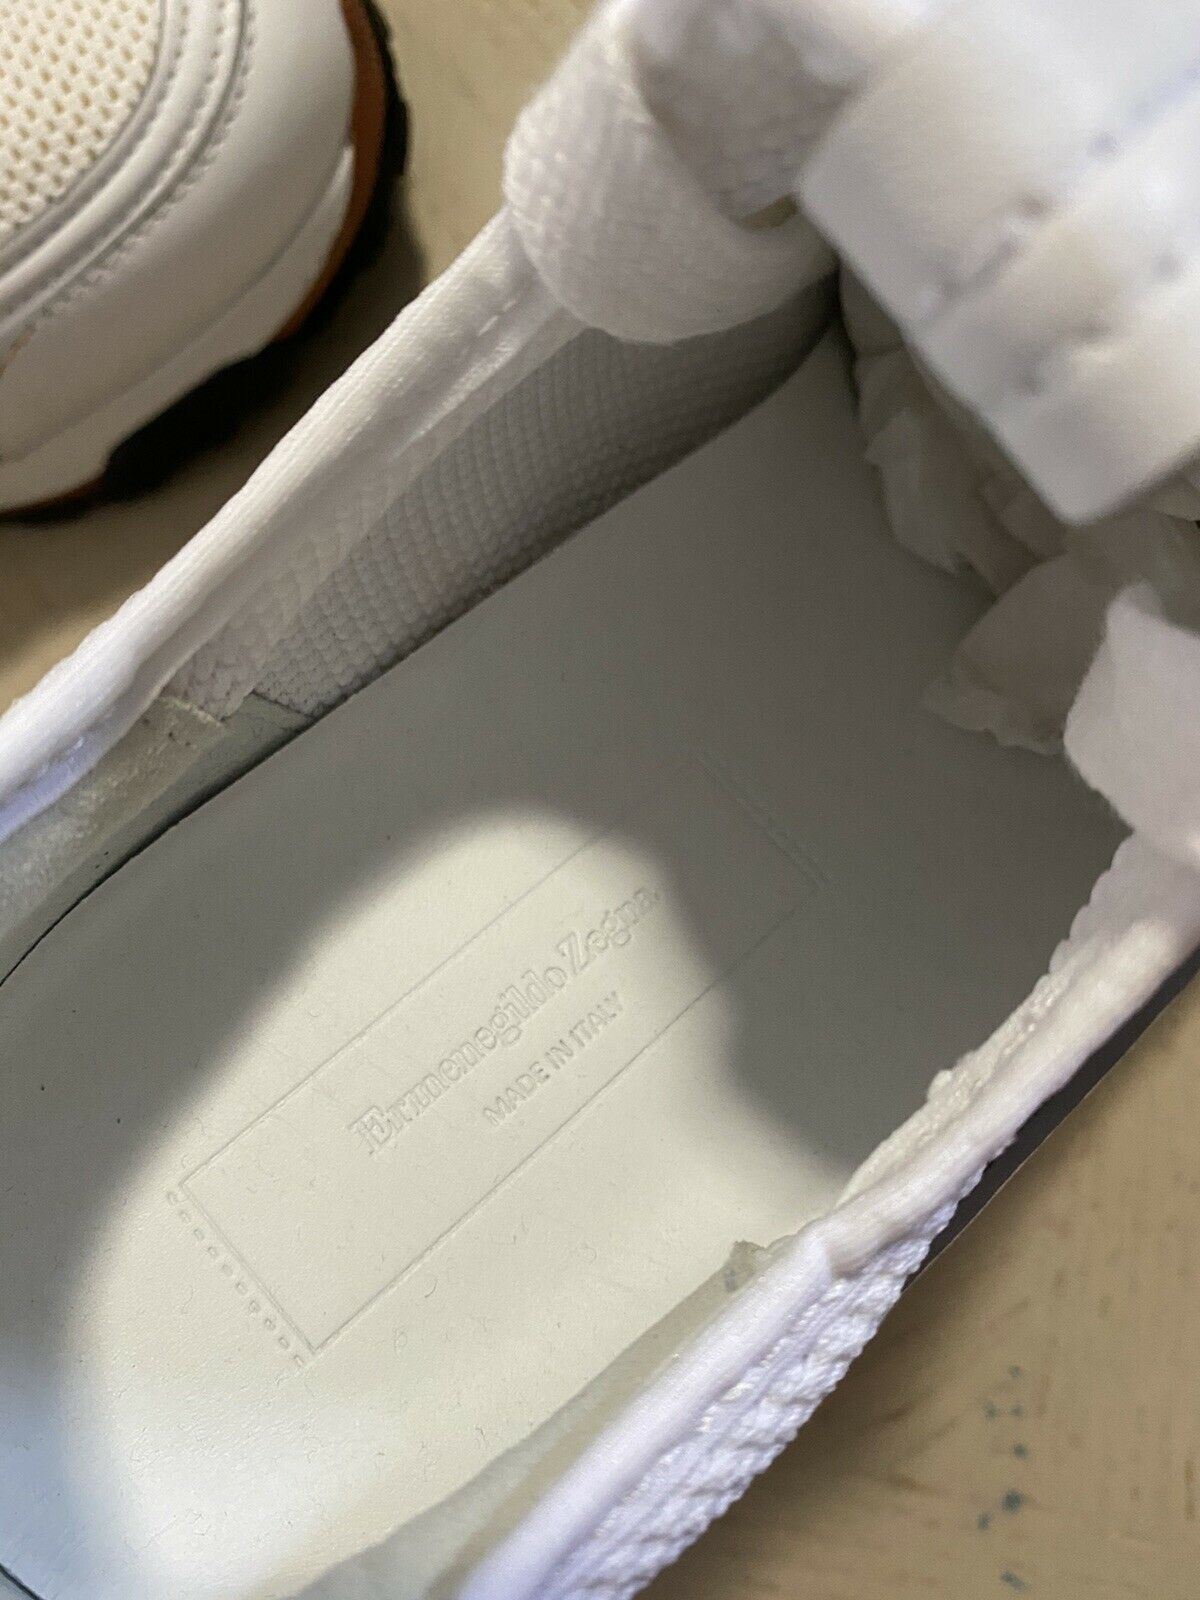 Neue 775 $ Ermenegildo Zegna Leder-Sneakers Schuhe Weiß 10,5 US Italien